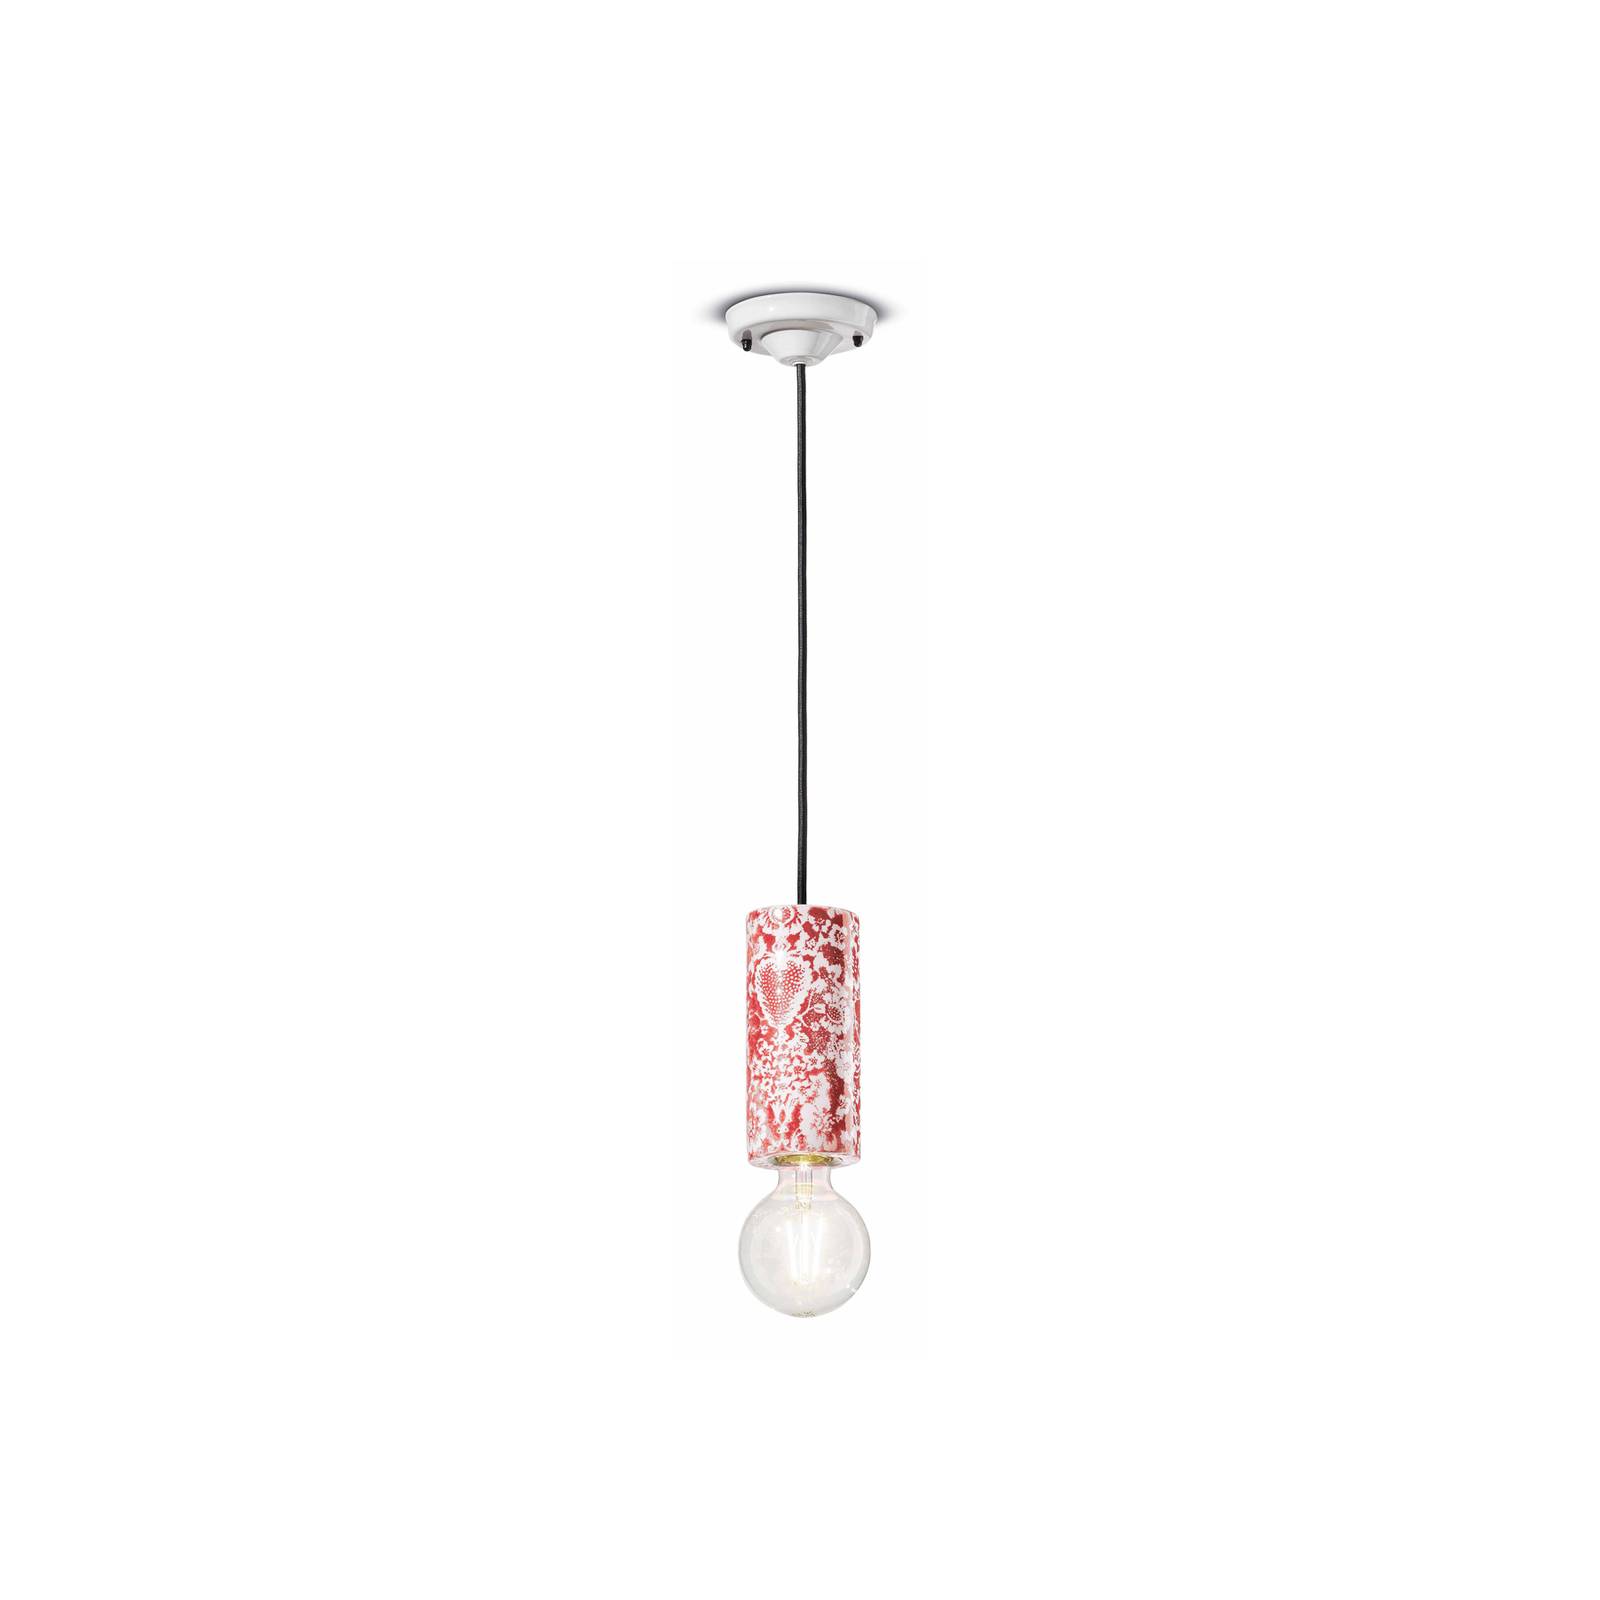 Ferroluce PI závěsná lampa, květinový vzor Ø 8 cm červená/bílá